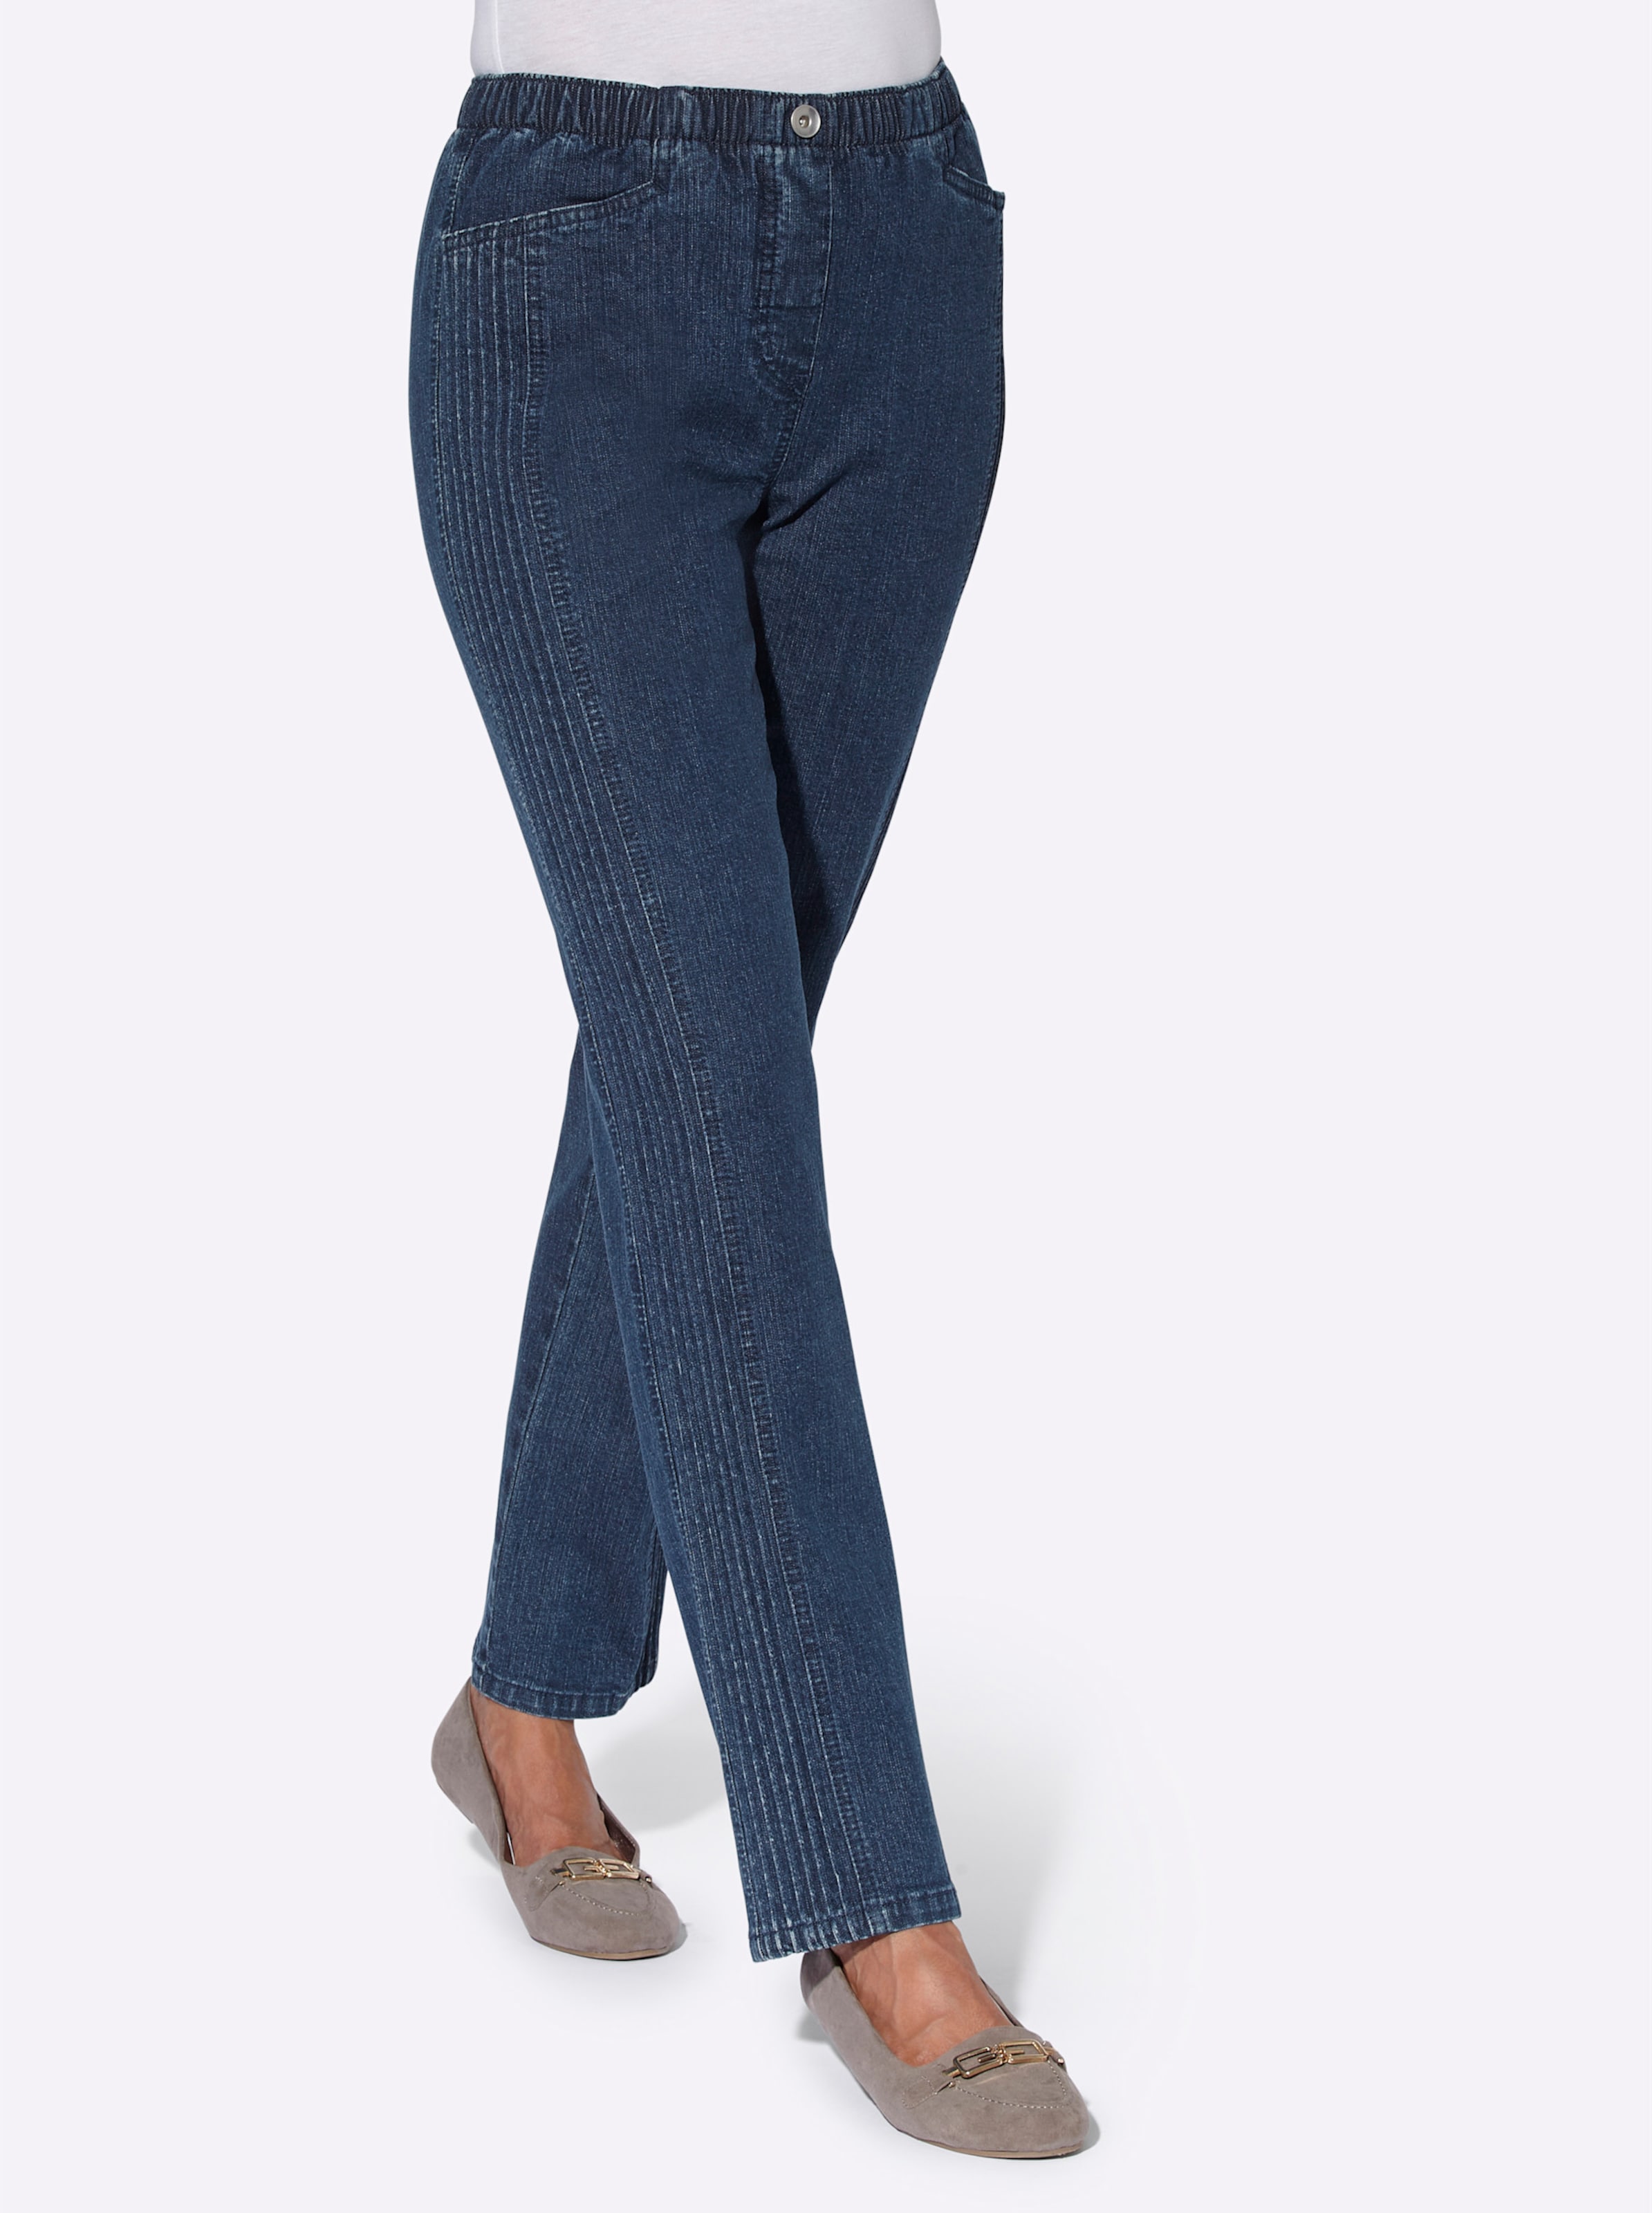 Witt Damen Jeans, darkblue-stone-washed